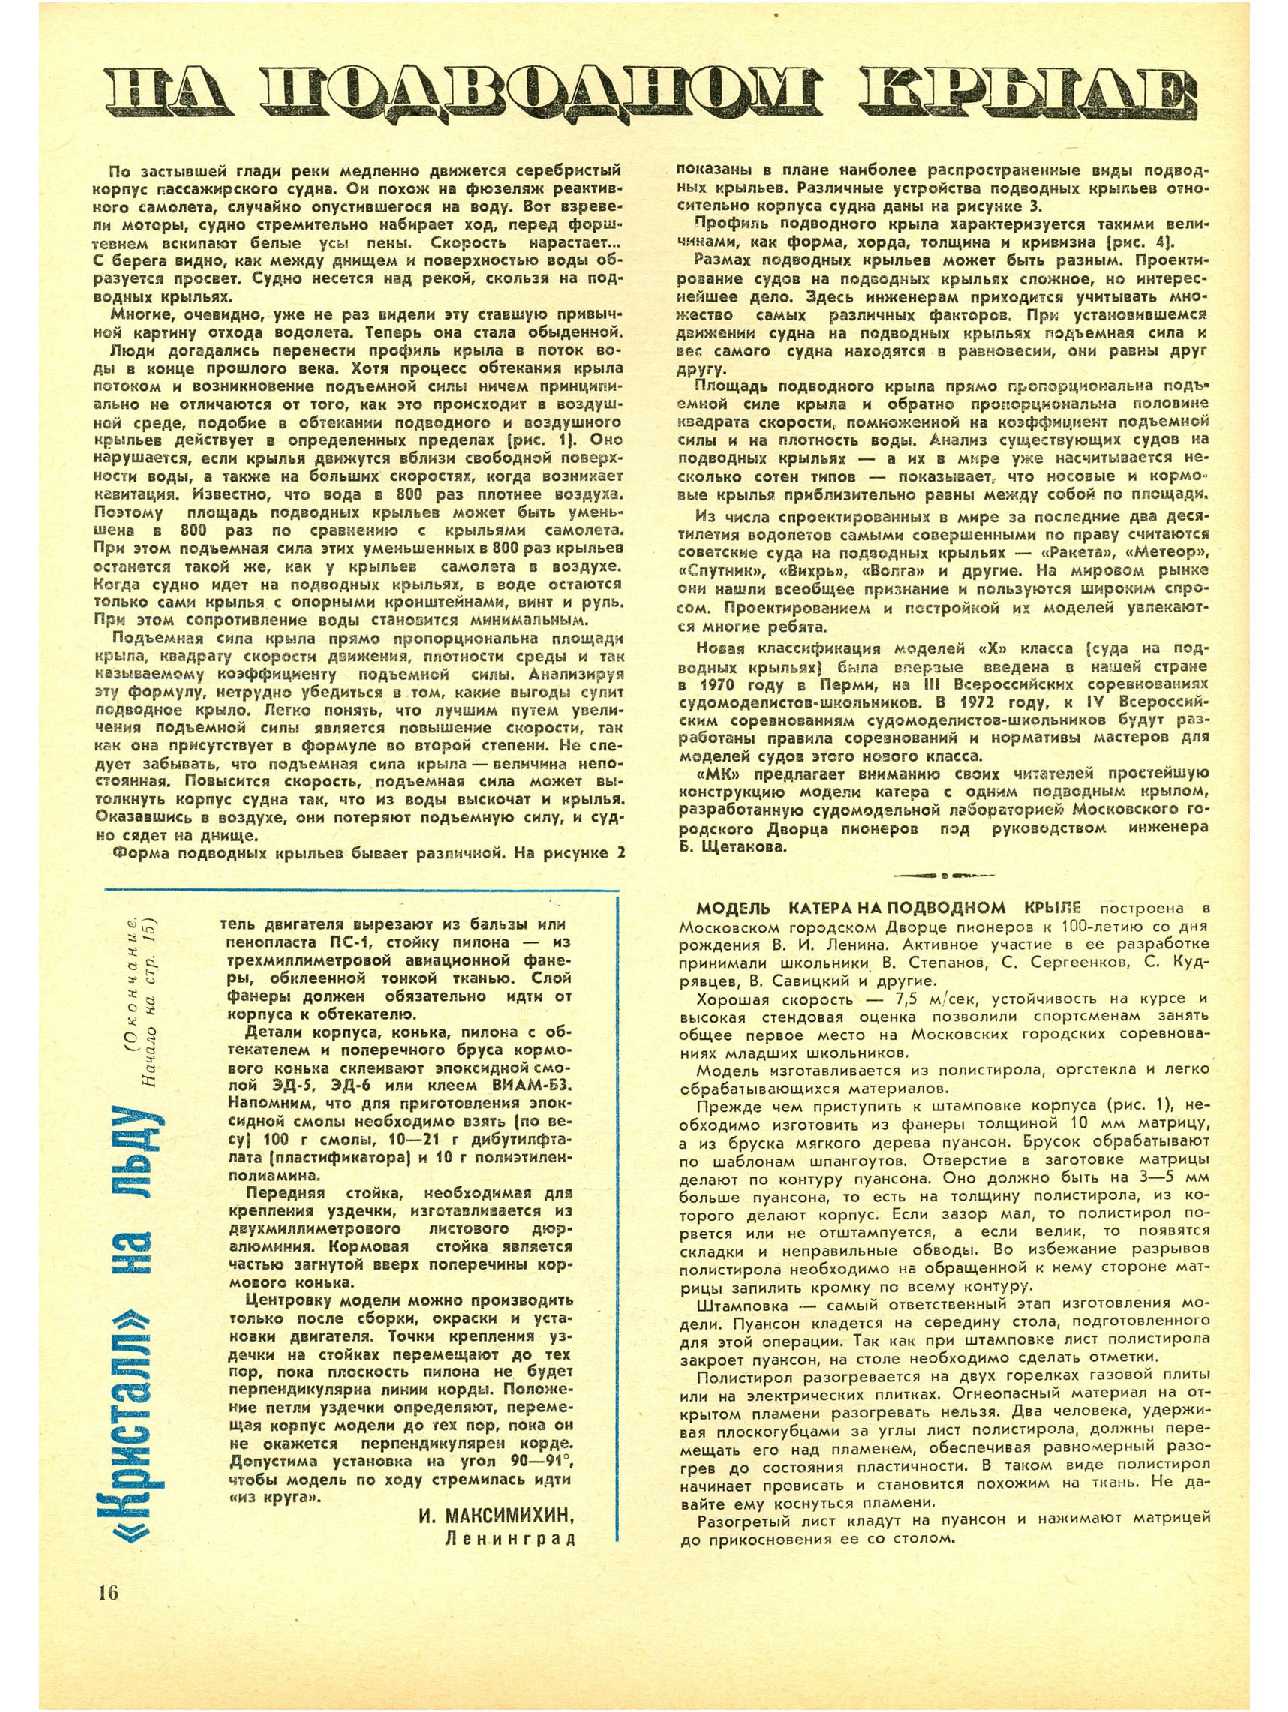 МК 11, 1970, 16 c.